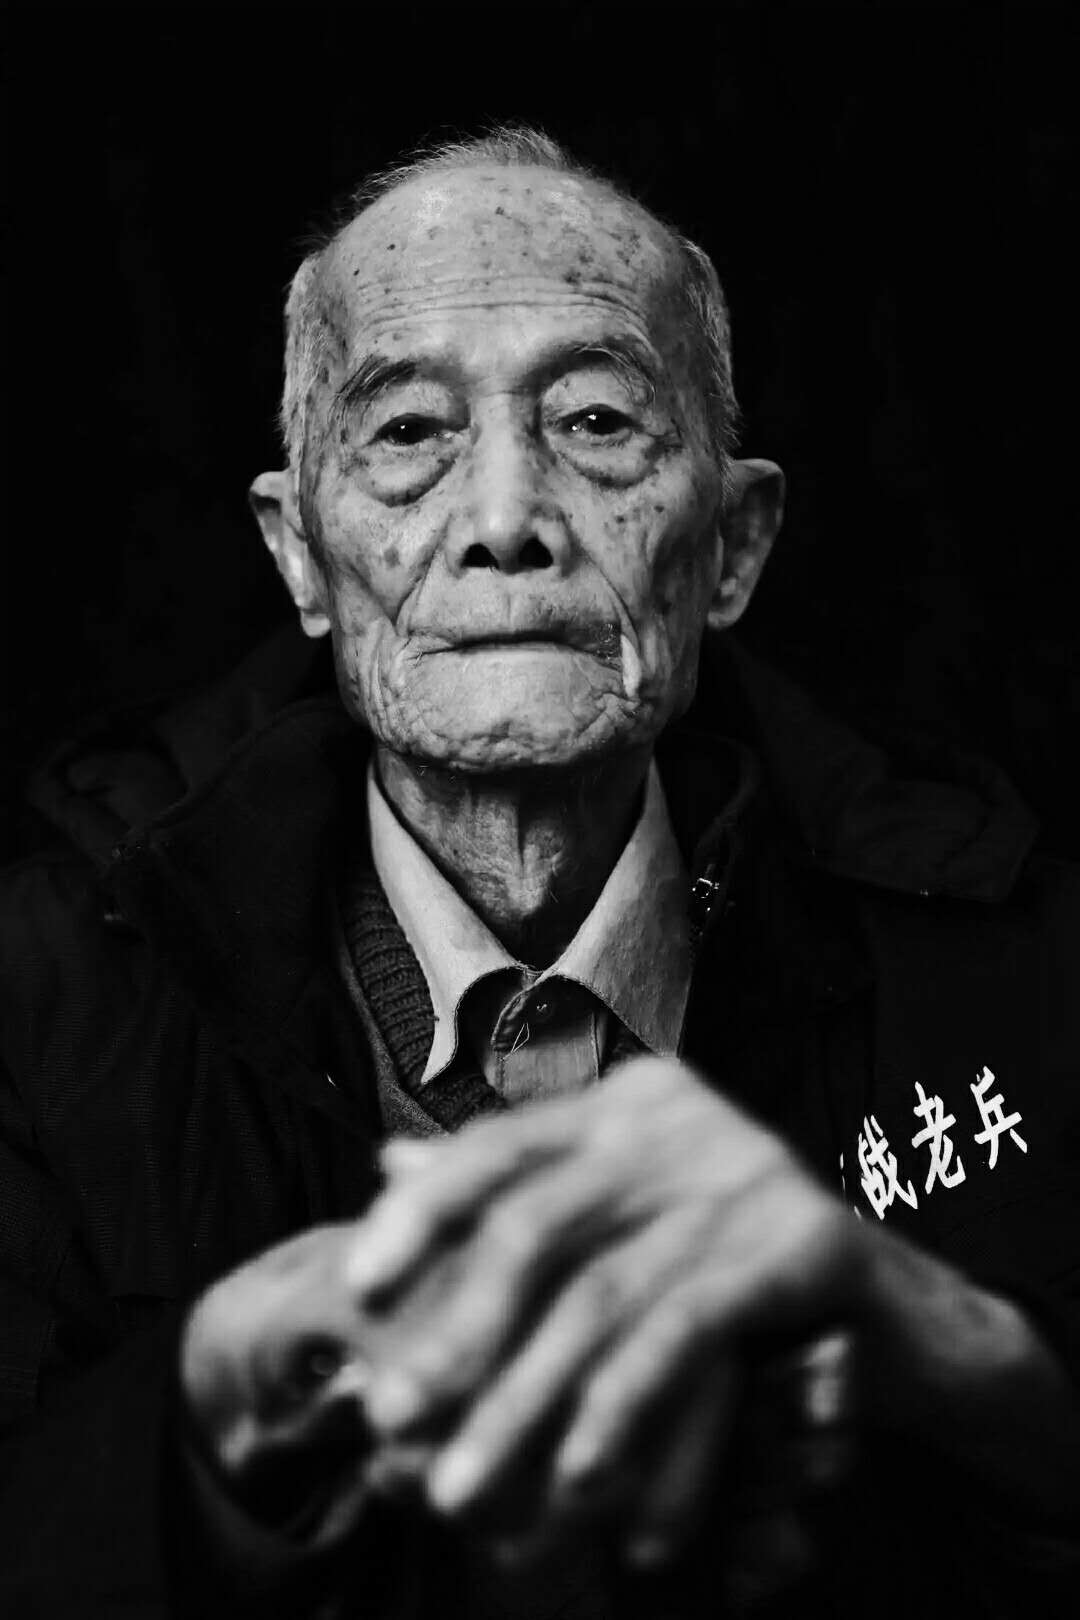 广东梅县白宫镇抗战老兵李国新逝世,享年98岁